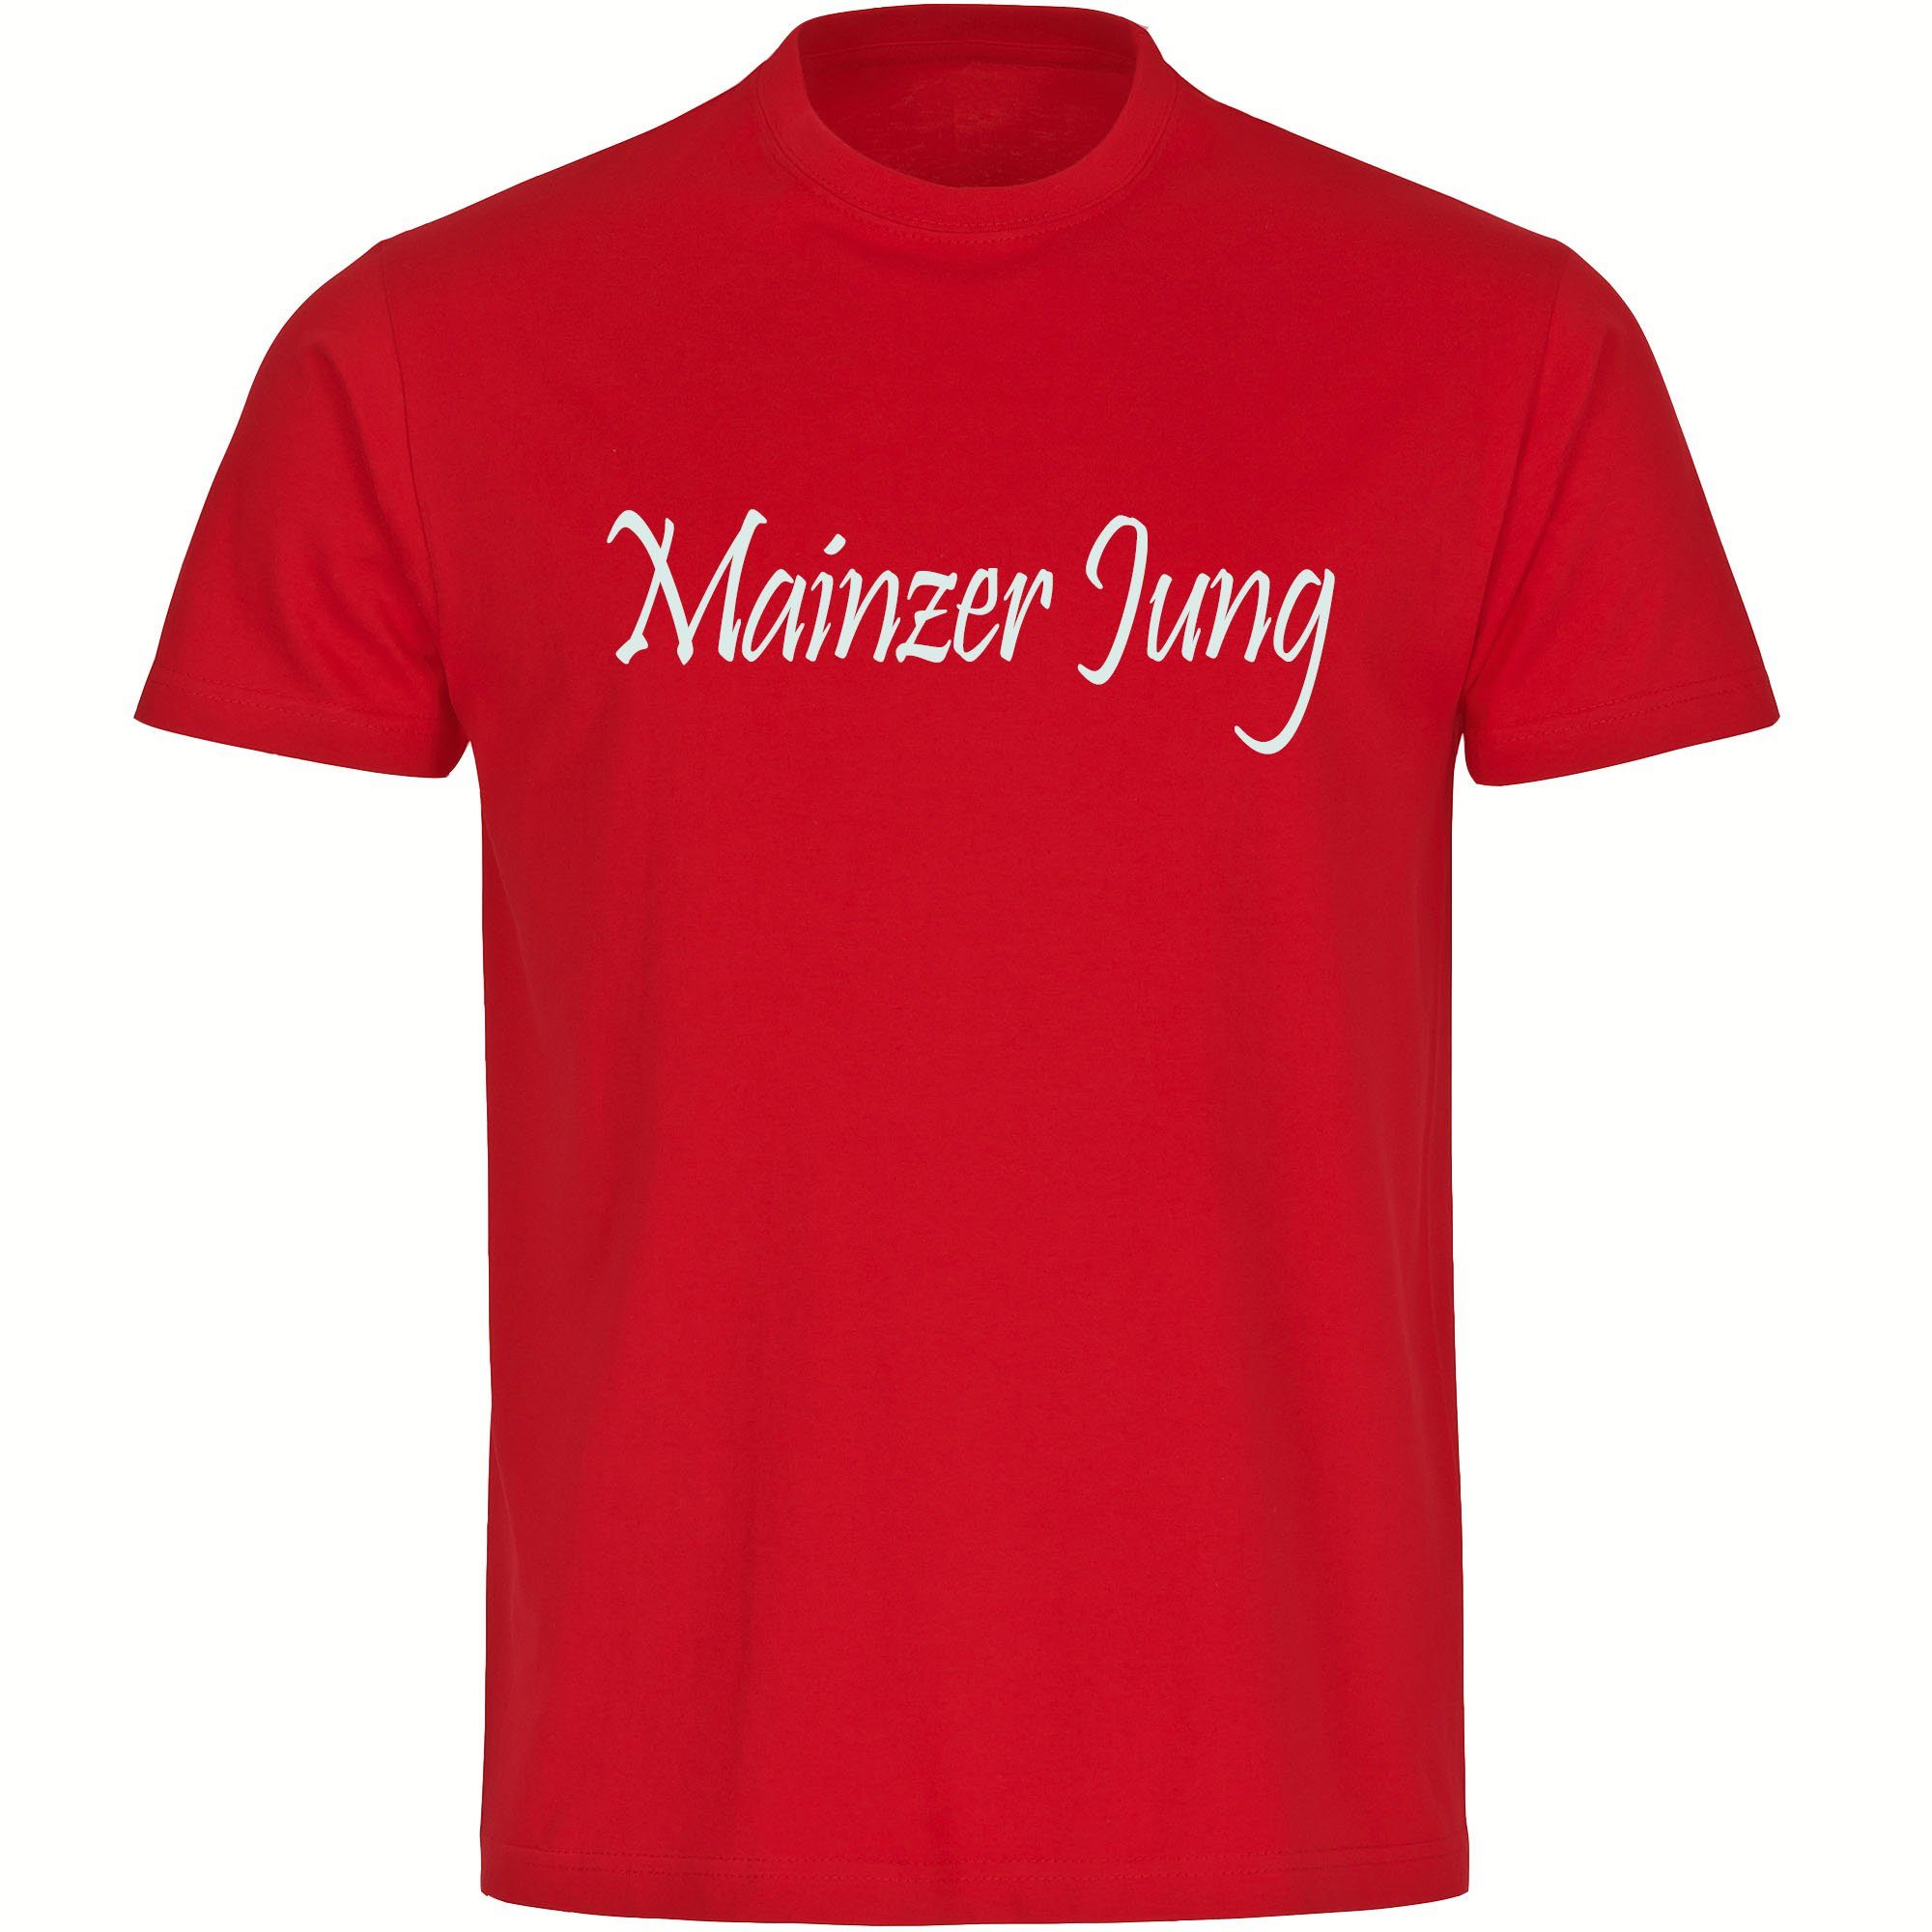 multifanshop T-Shirt Kinder Mainz - Mainzer Jung - Boy Girl